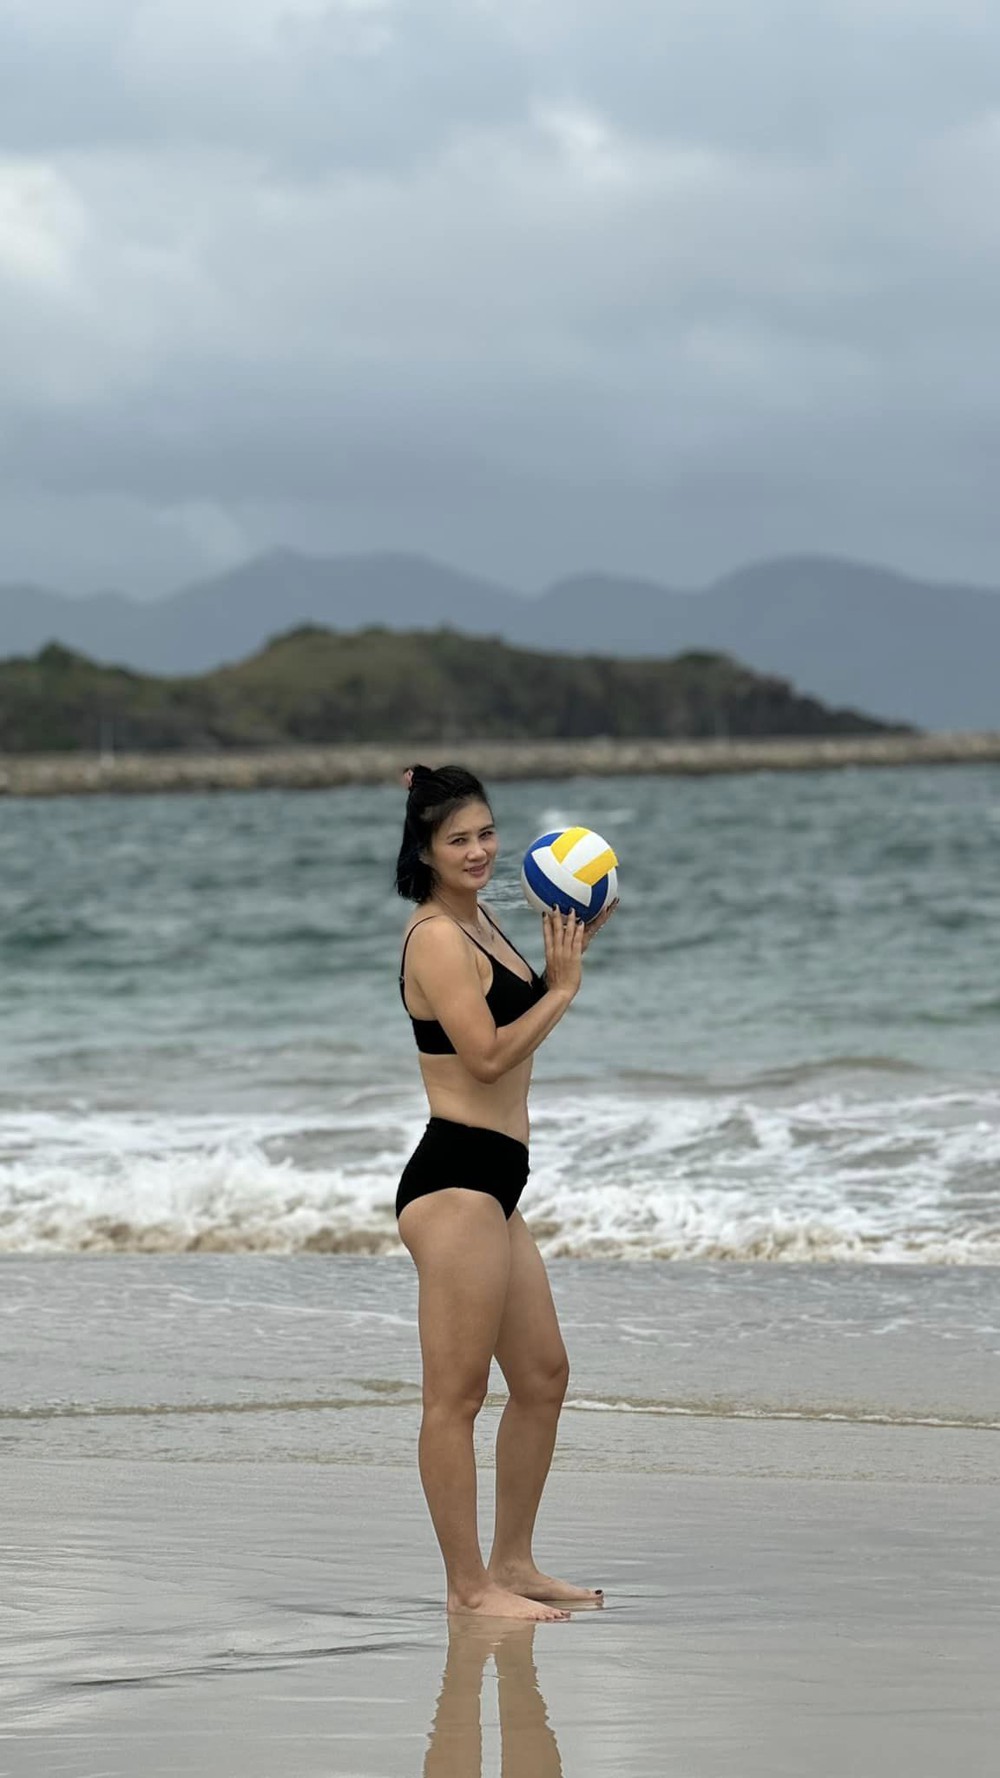 Hoa khôi bóng chuyền Kim Huệ: Diện bikini khoe sắc vóc U45, được khen đẹp quá - Ảnh 3.